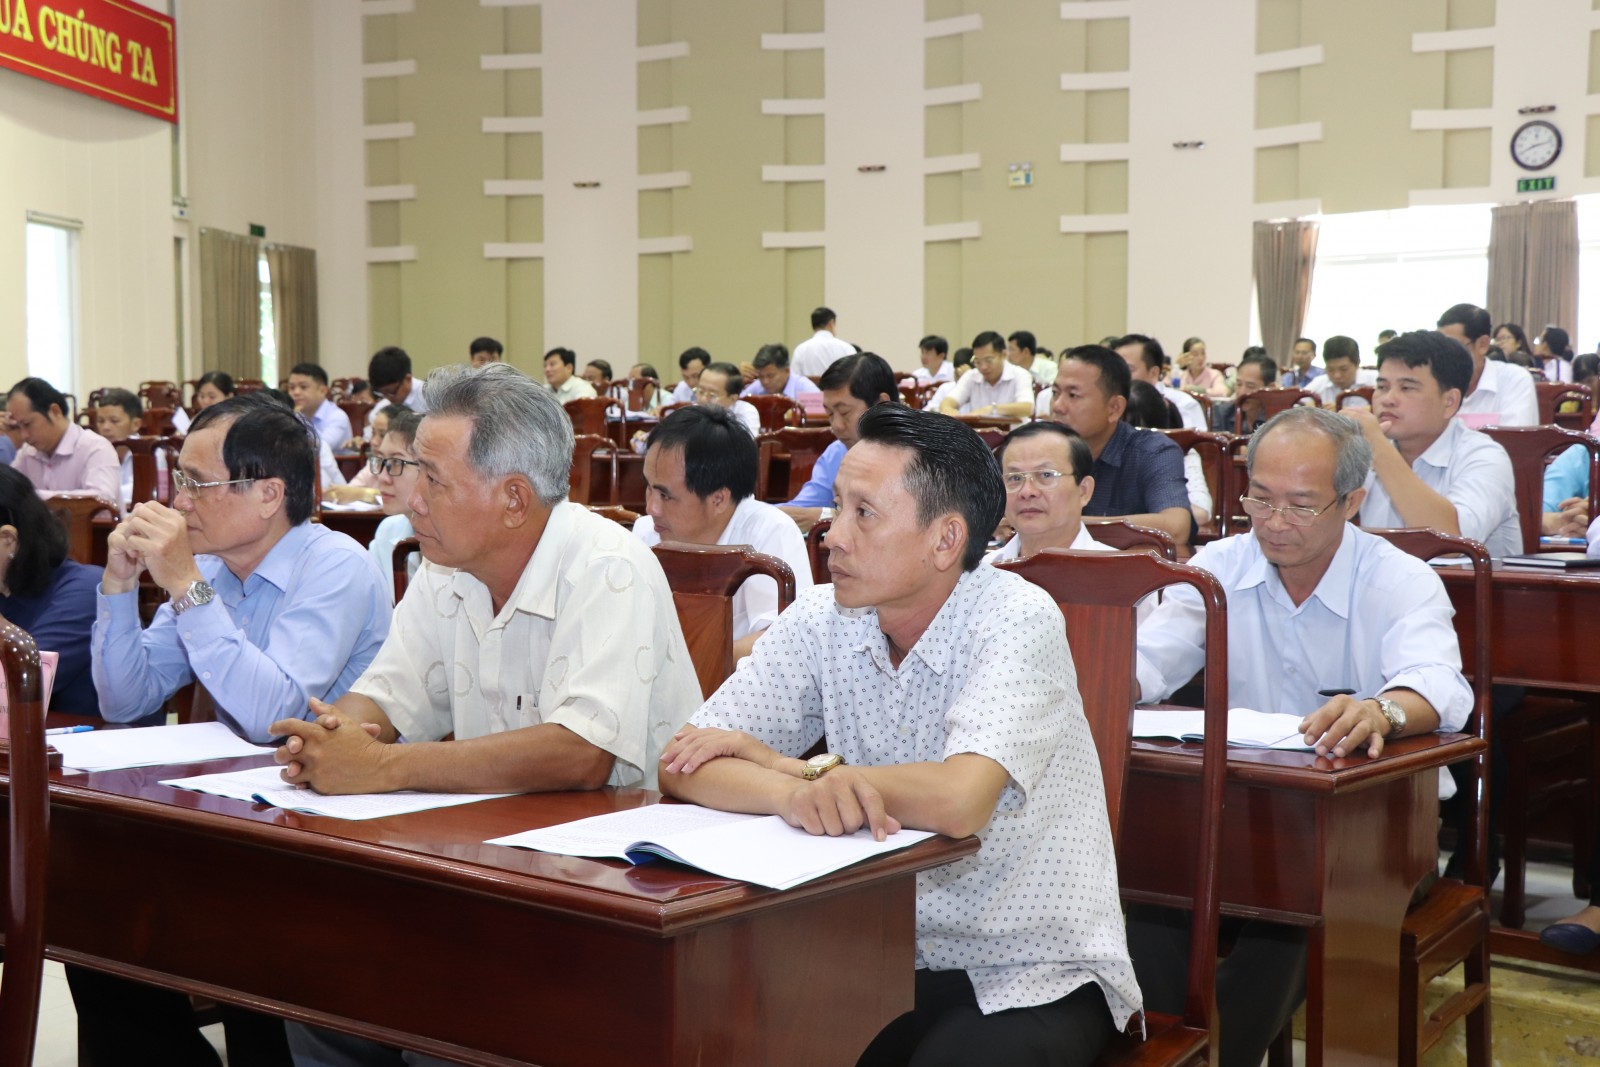 Thành phố Hồ Chí Minh: Các cấp Hội chủ trì và tham gia thực hiện 436 cuộc giám sát